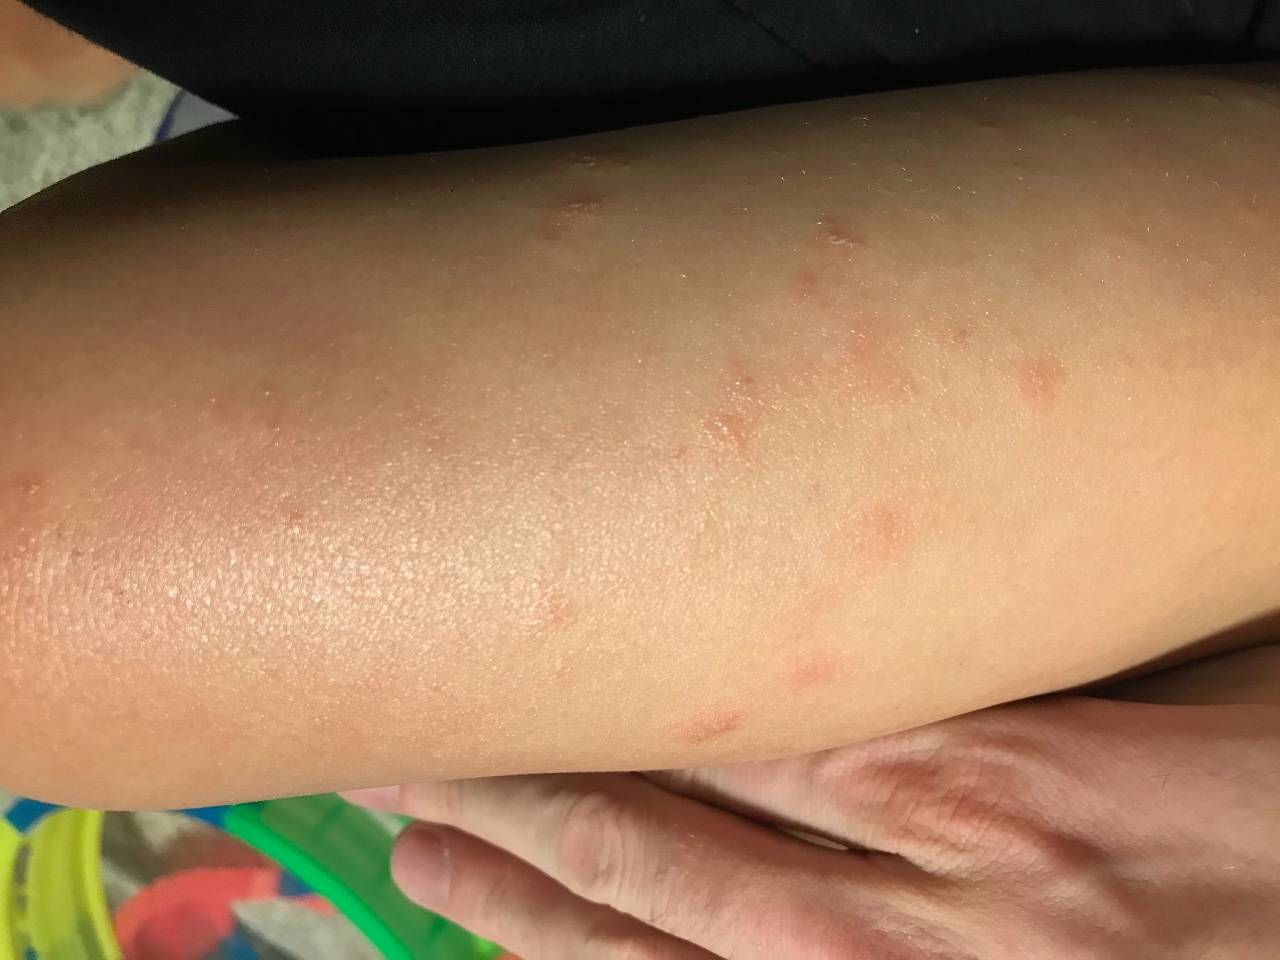 Аллергия без высыпаний на коже • аллергия и аллергические реакции